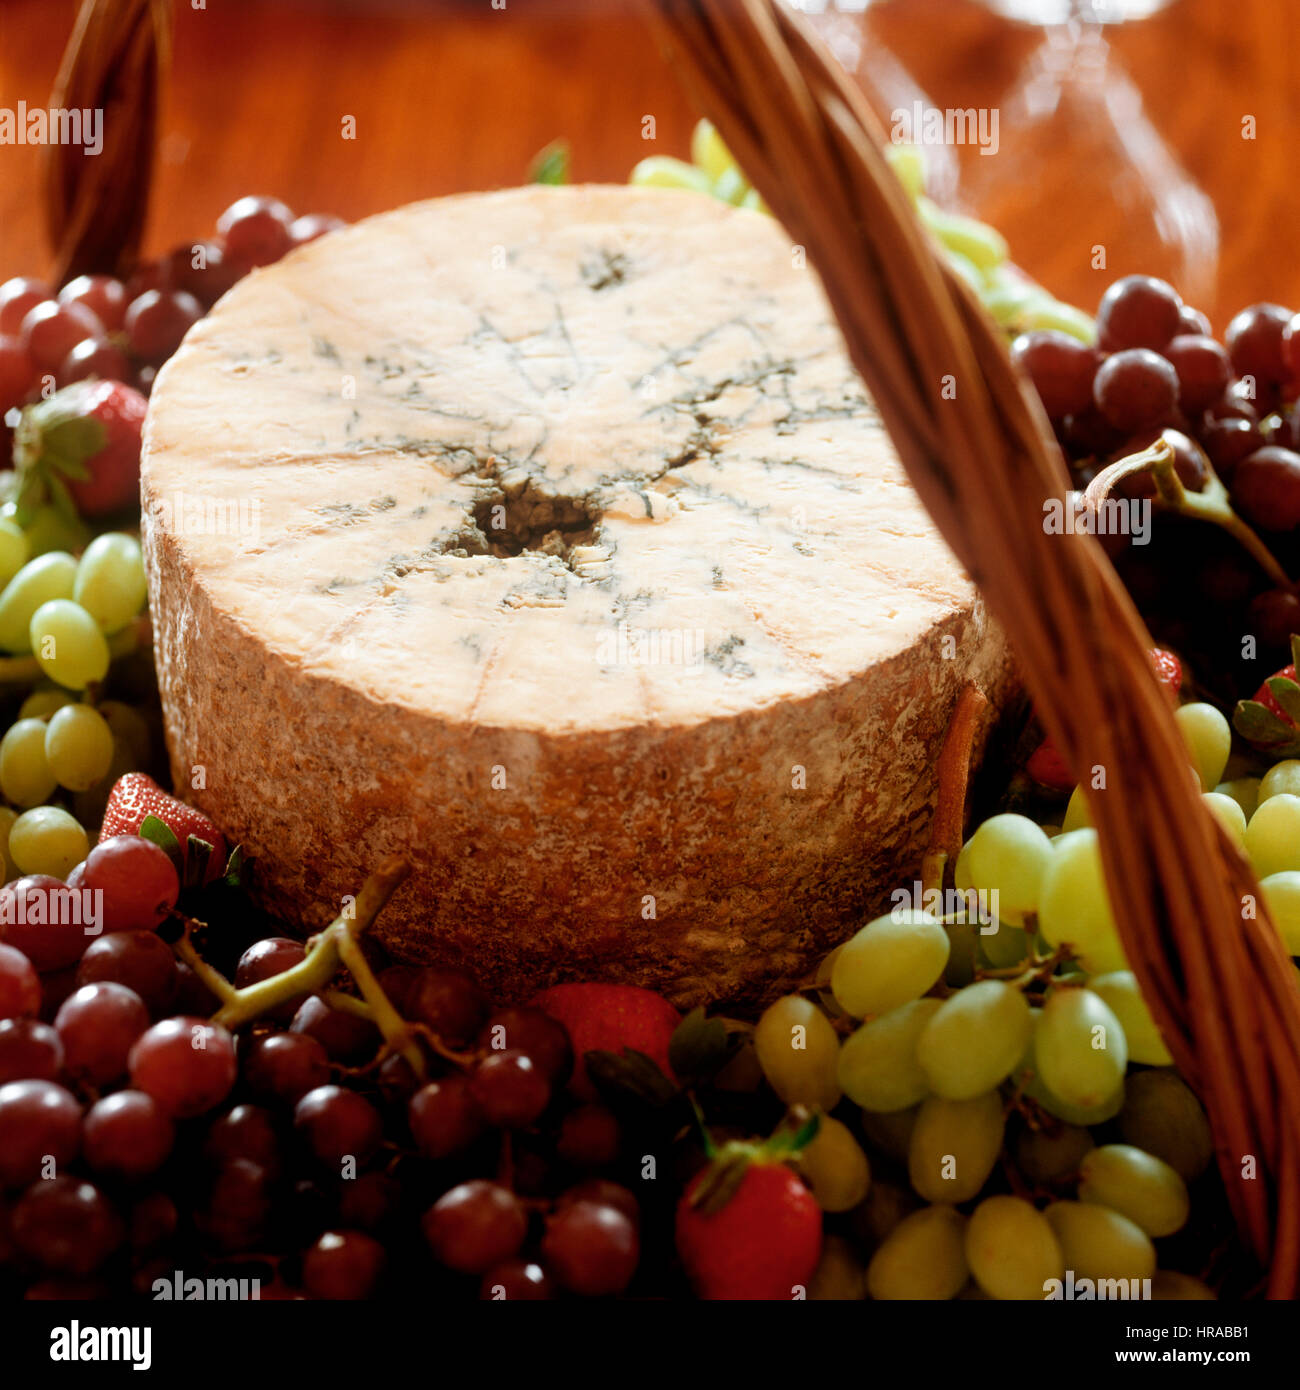 Le fromage et les raisins dans un panier. Banque D'Images